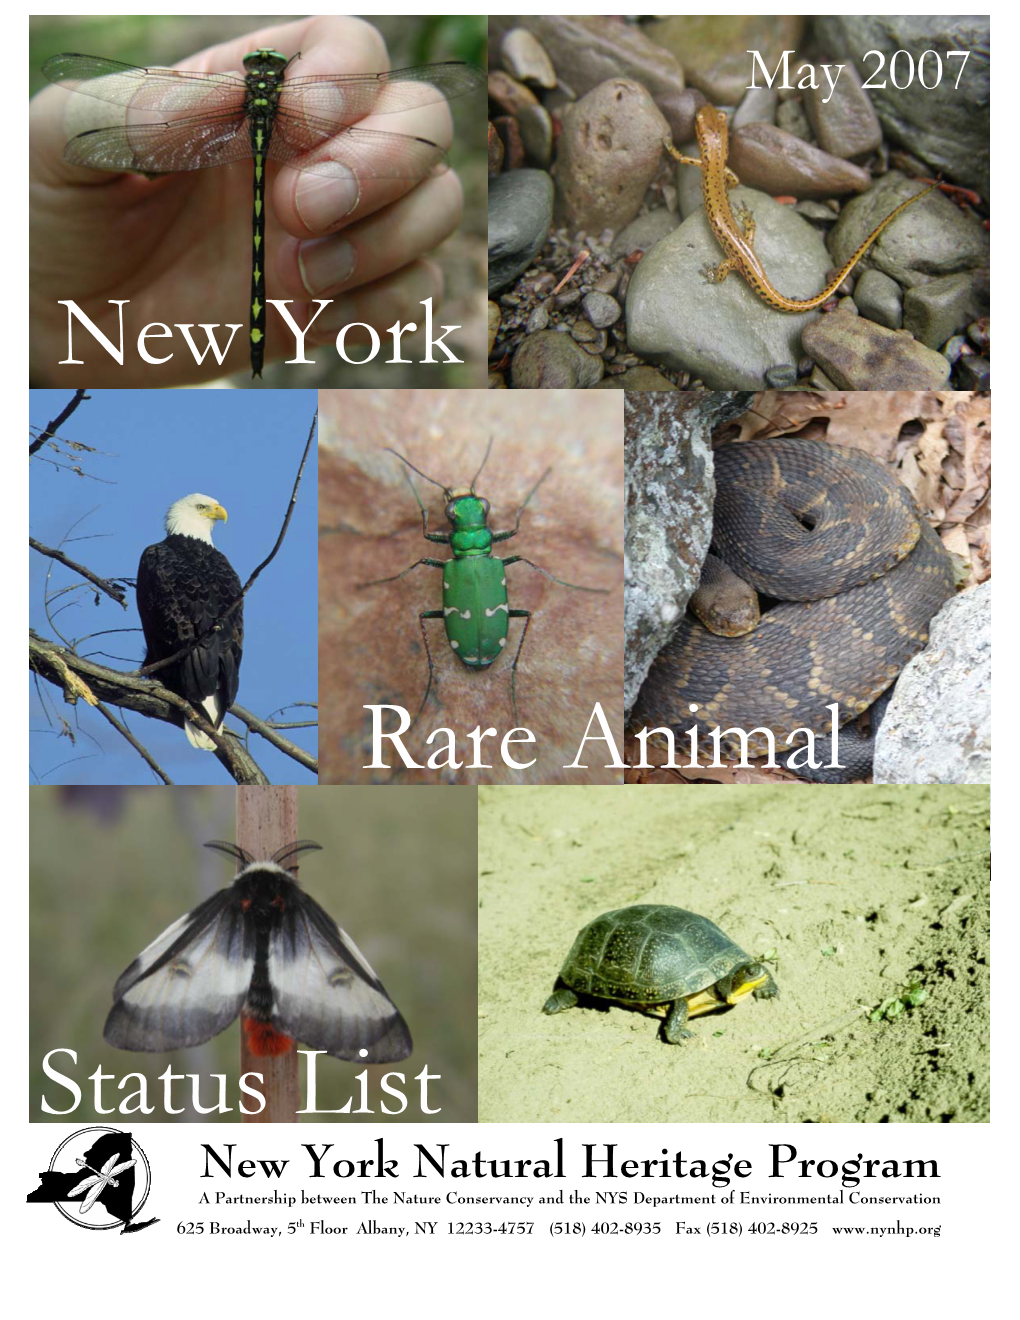 2007 Rare Animal List (NY)